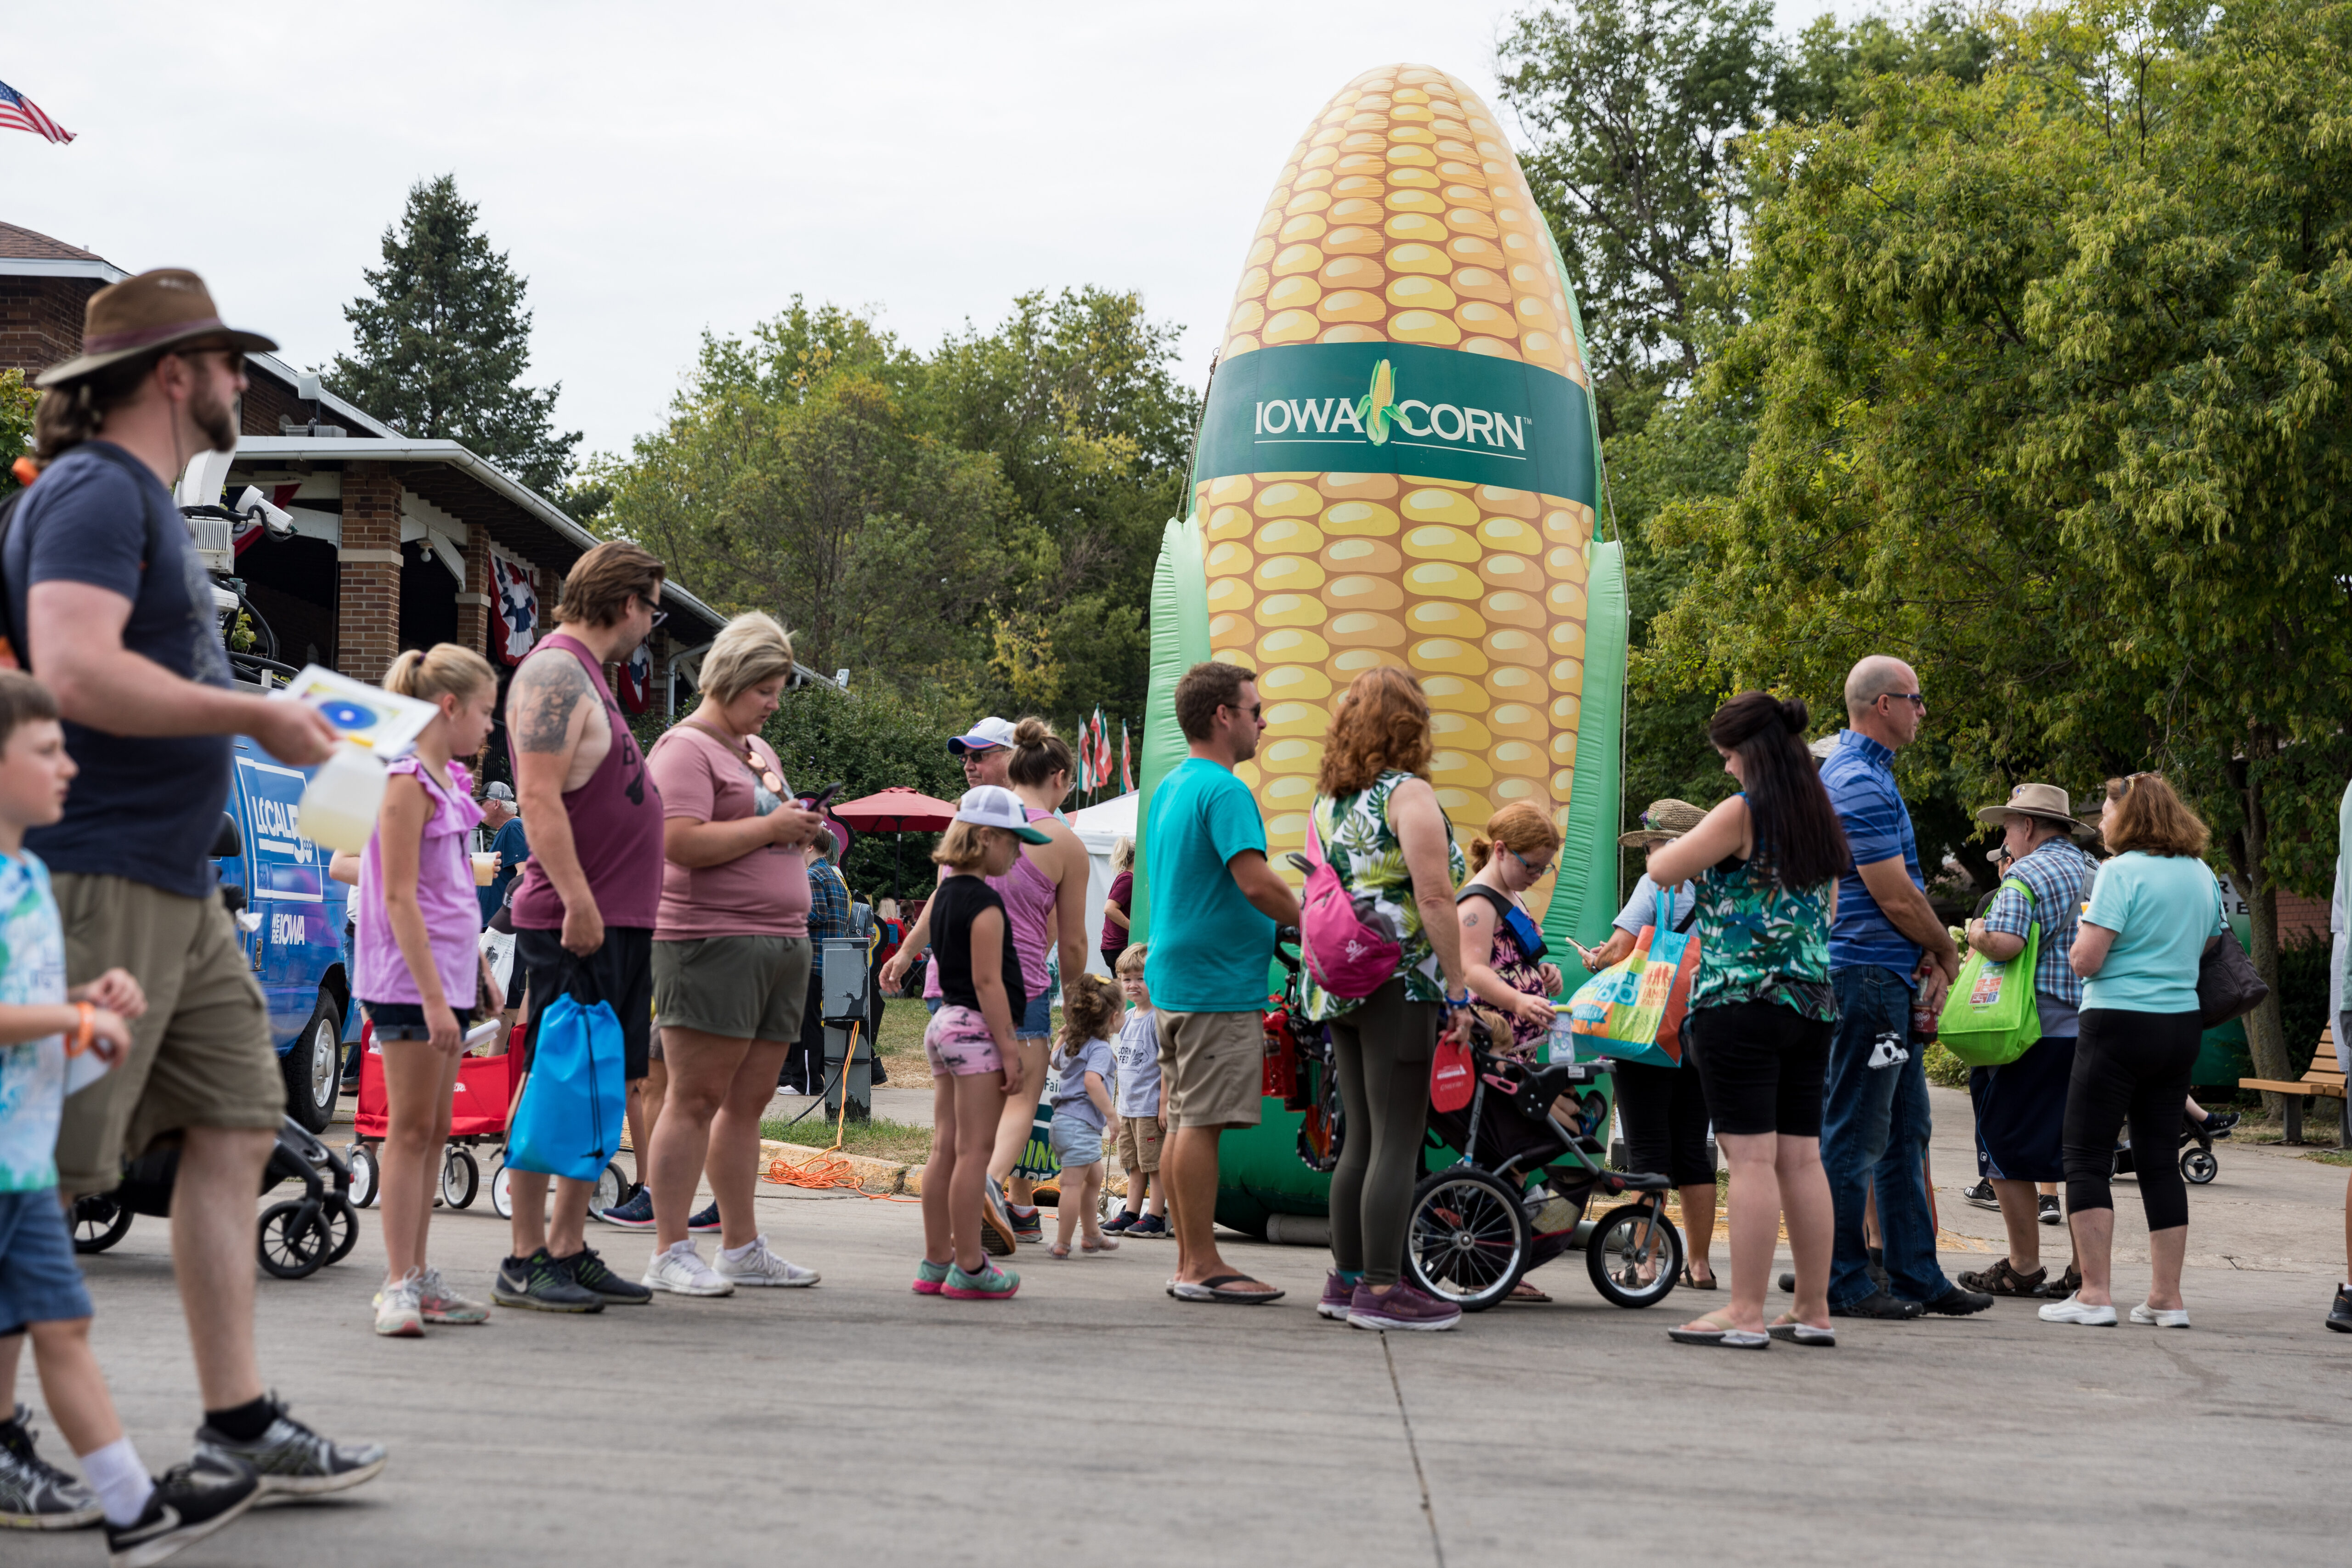 Iowa Corn state fair